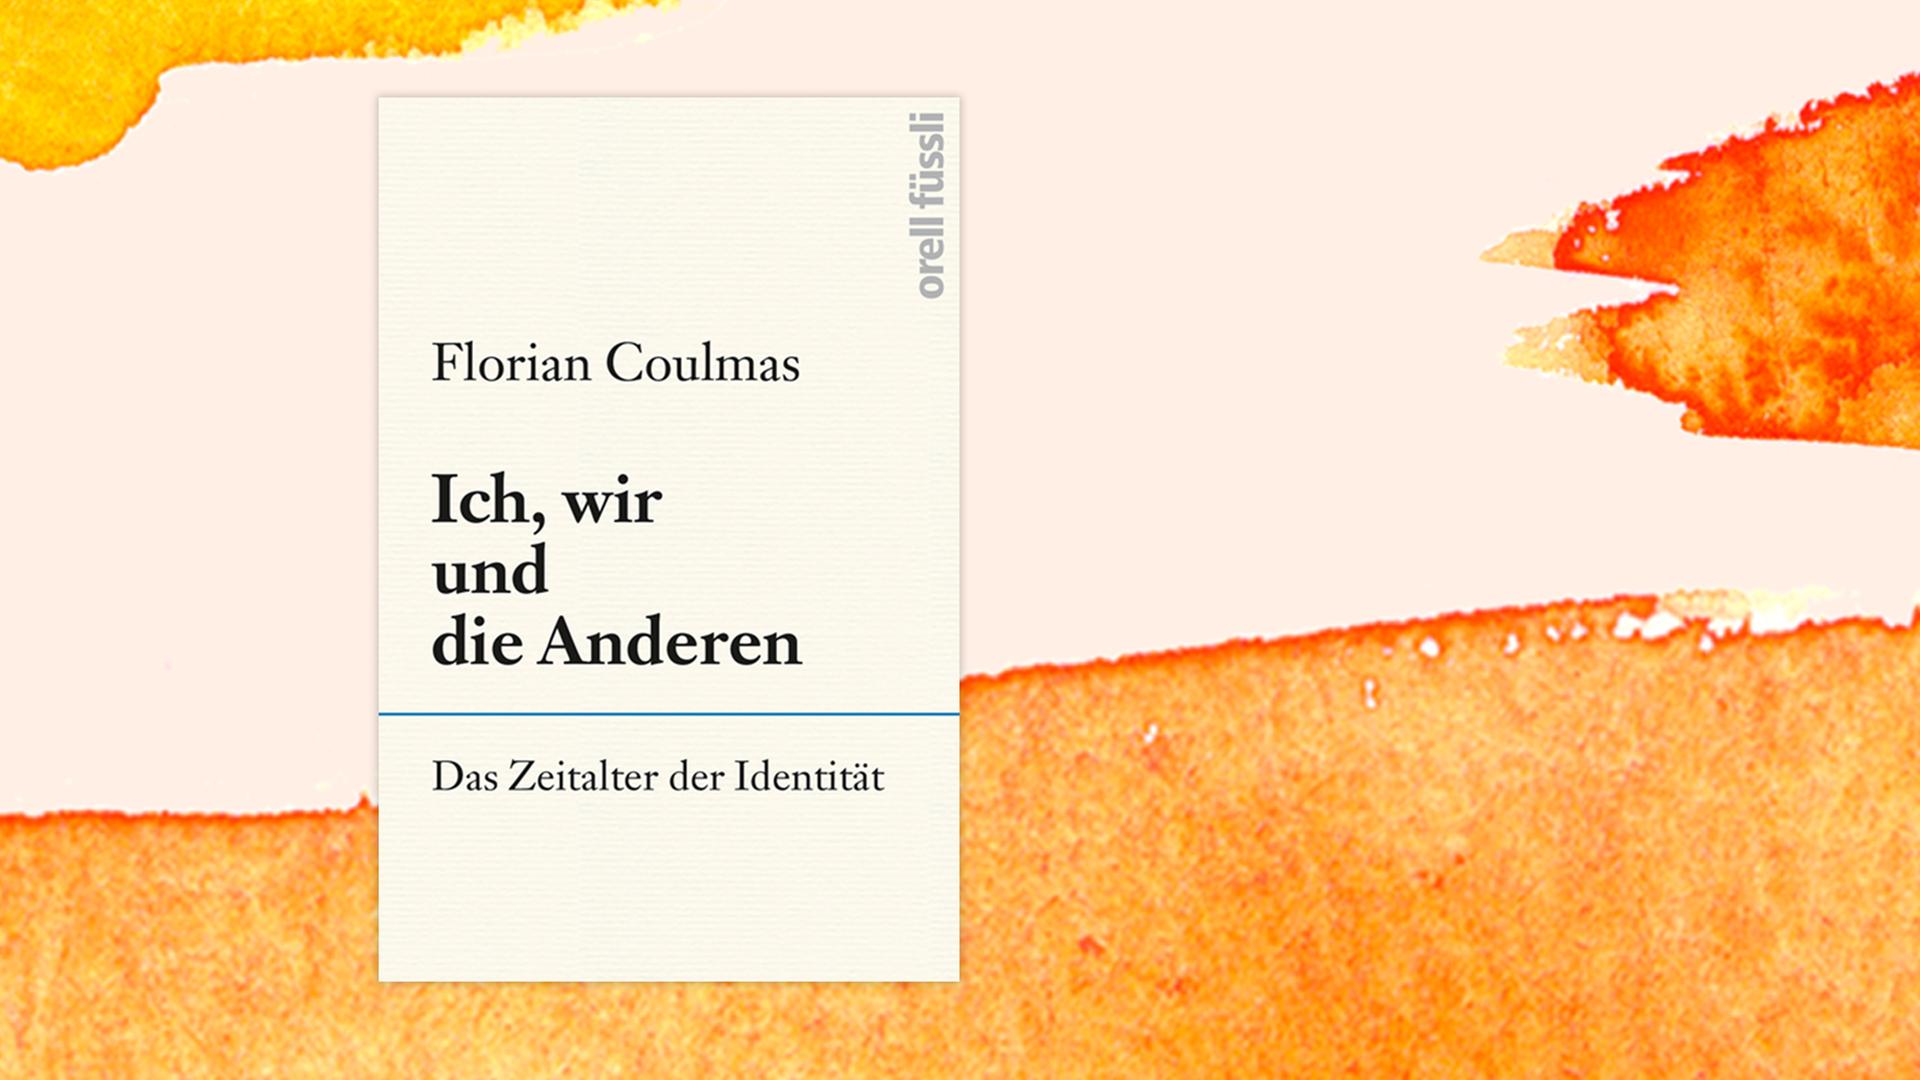 Das Buchcover von Florian Coulmas "Ich, wir und die Anderen. Das Zeitalter der Identität" auf pastellfarbenen Hintergrund.